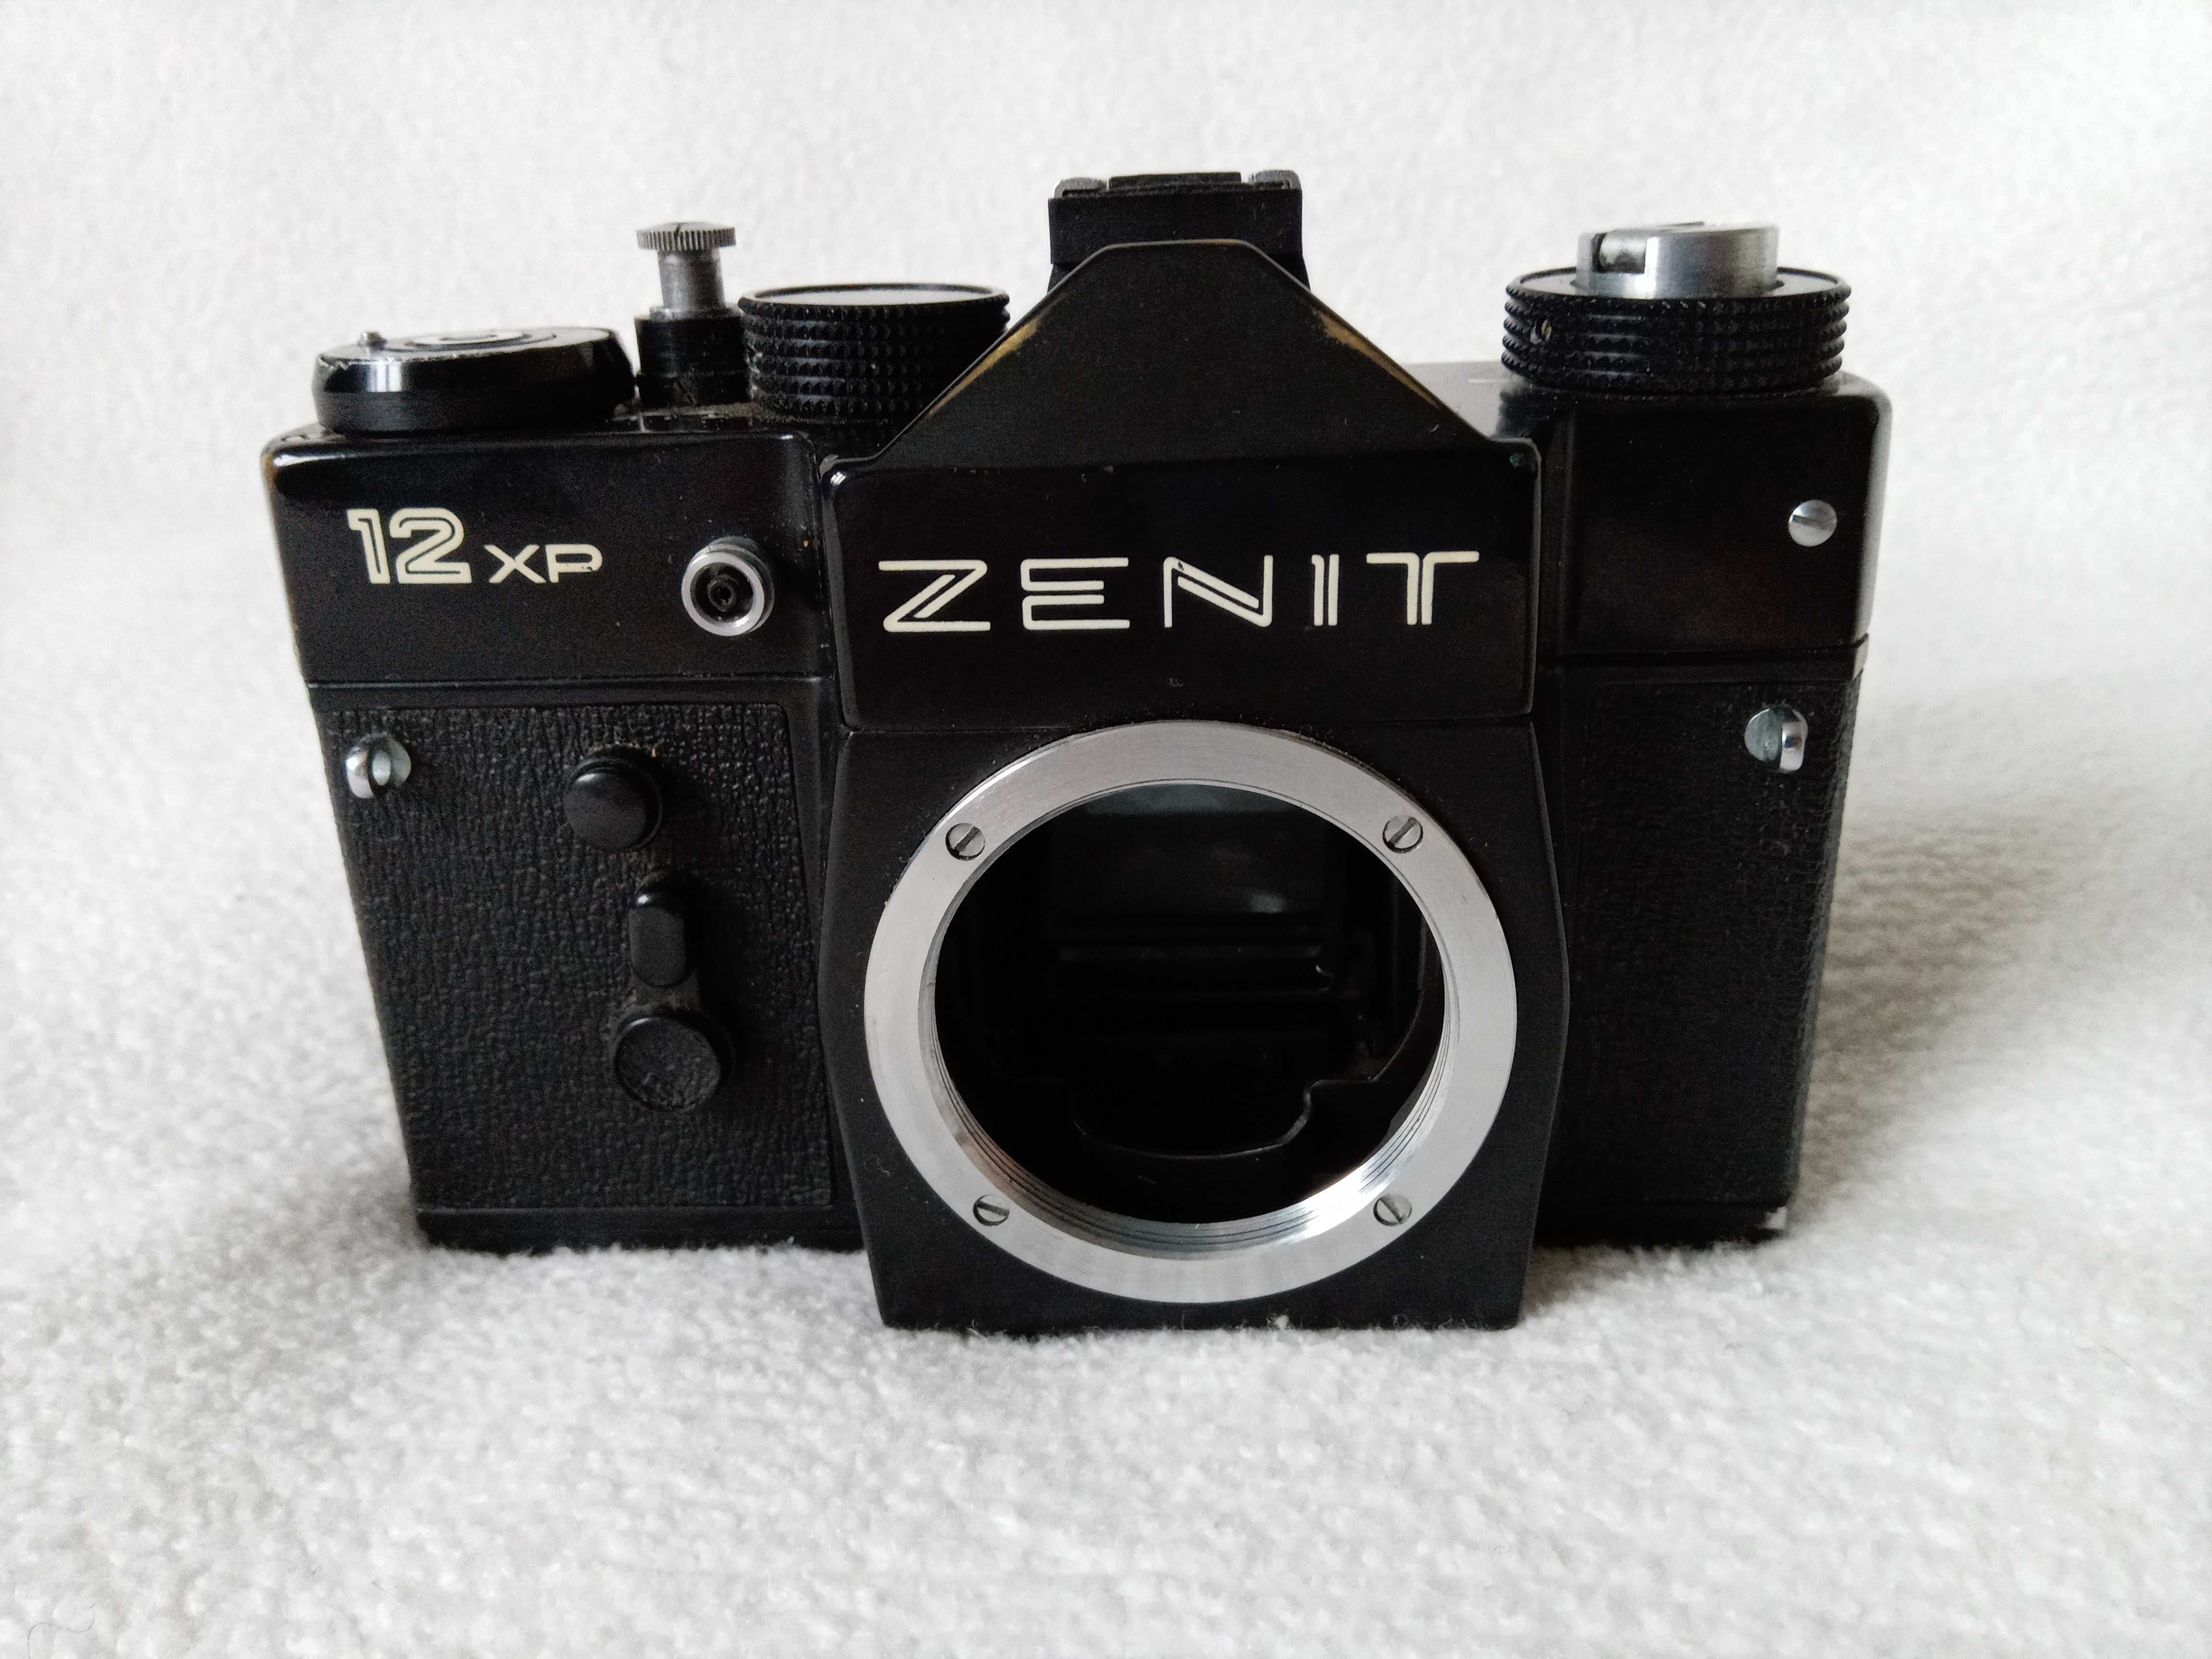 Фотоспалах, фотоапарат "Зеніт-12 XP", "Смена-6", "ФЭД-4", фотоштатив